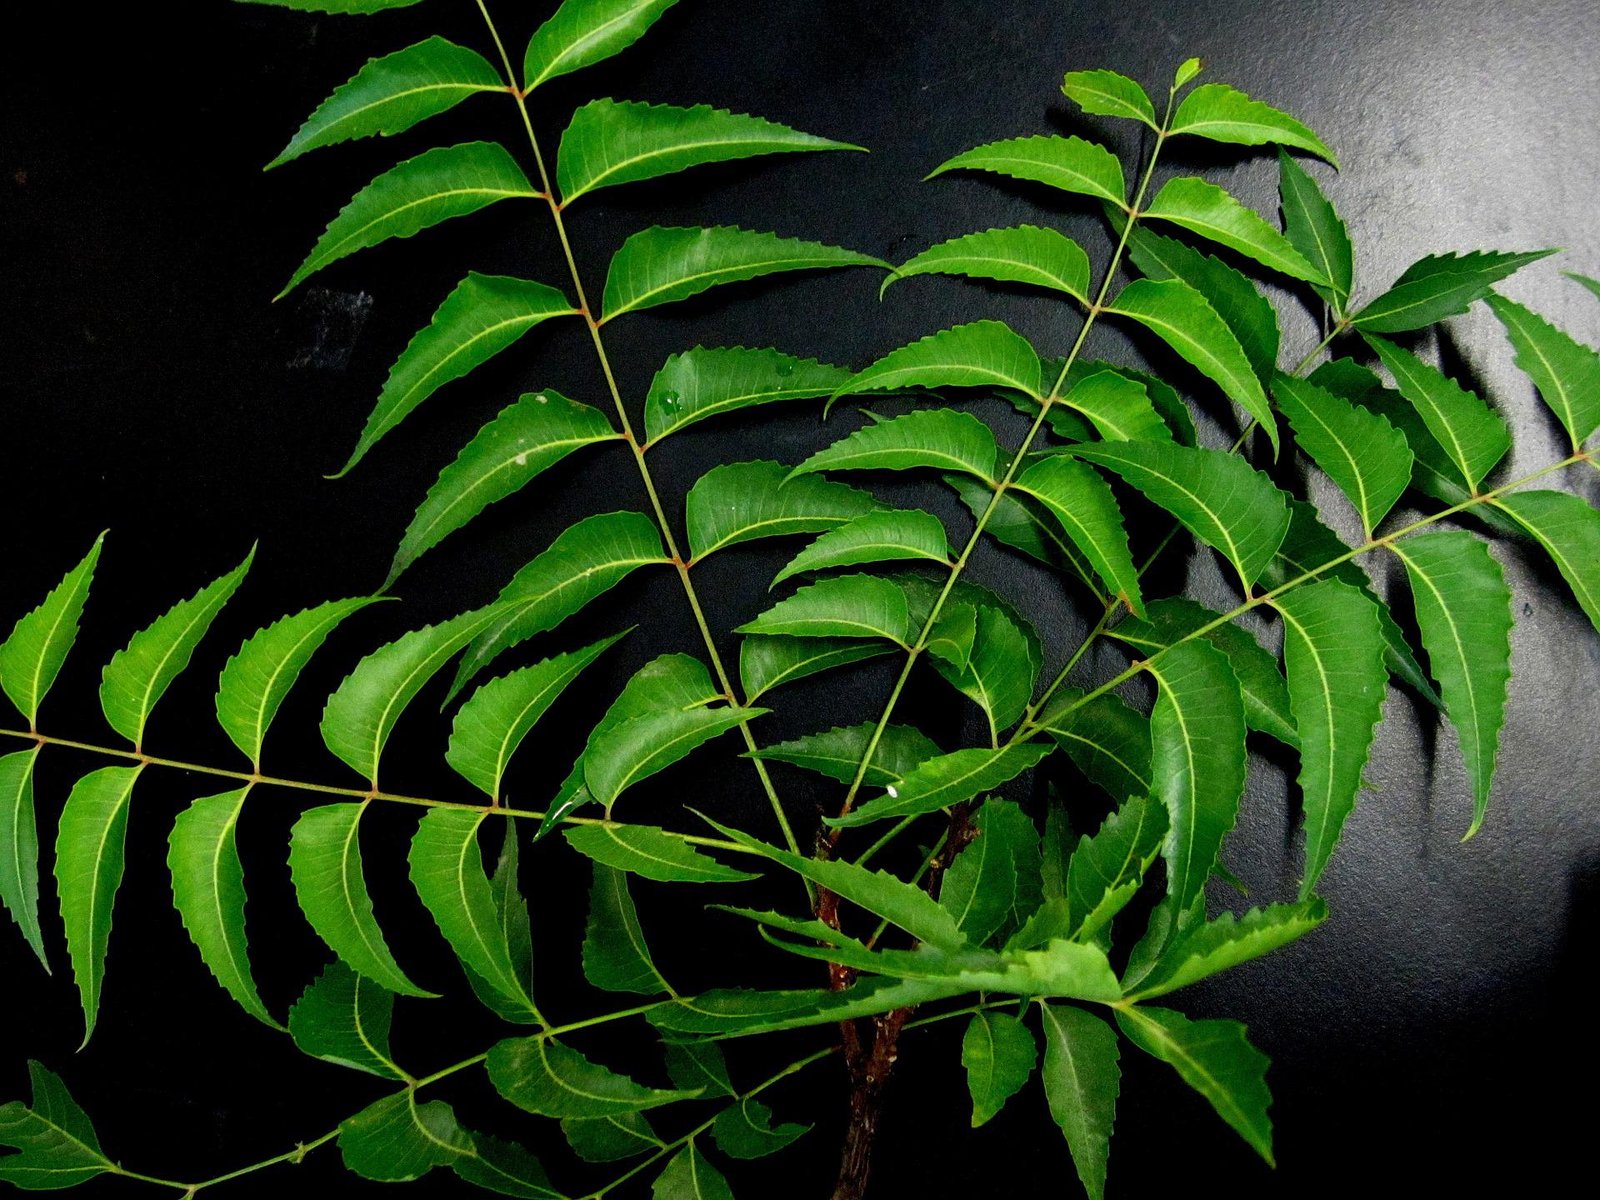 neem-leaves-g07a5348e6_1920